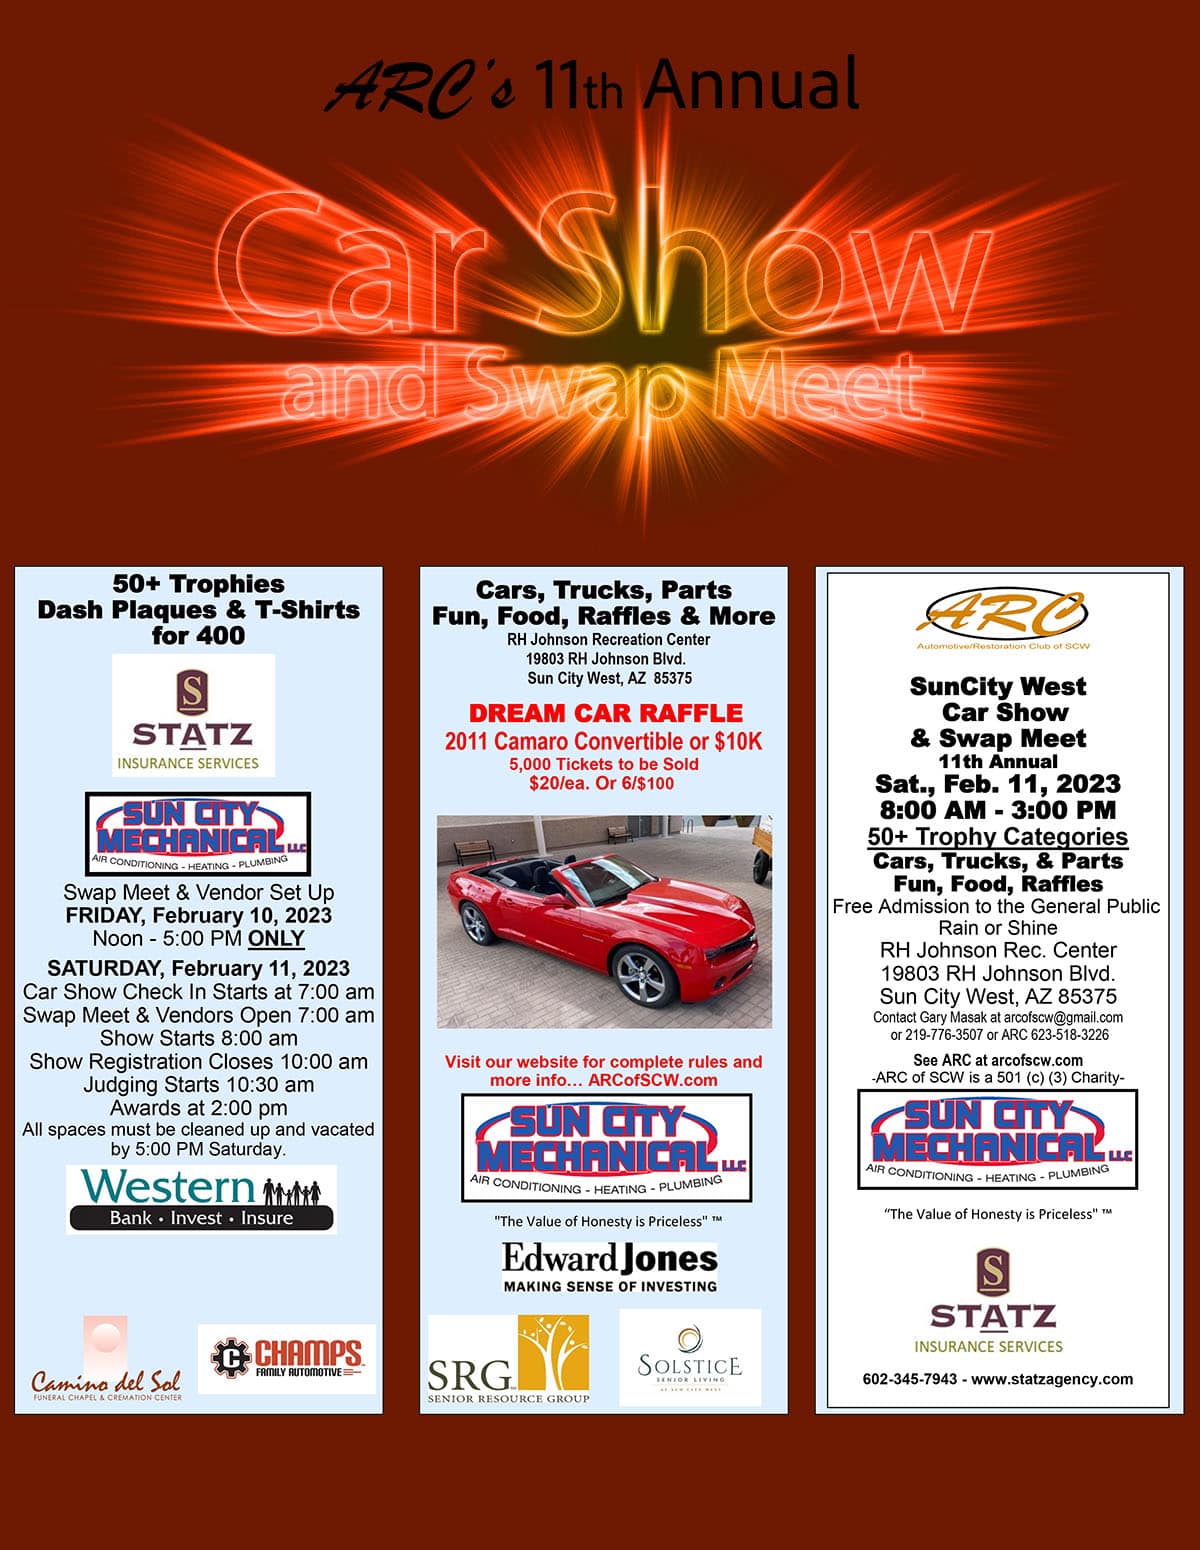 Sun City West Car Show & Swap Meet